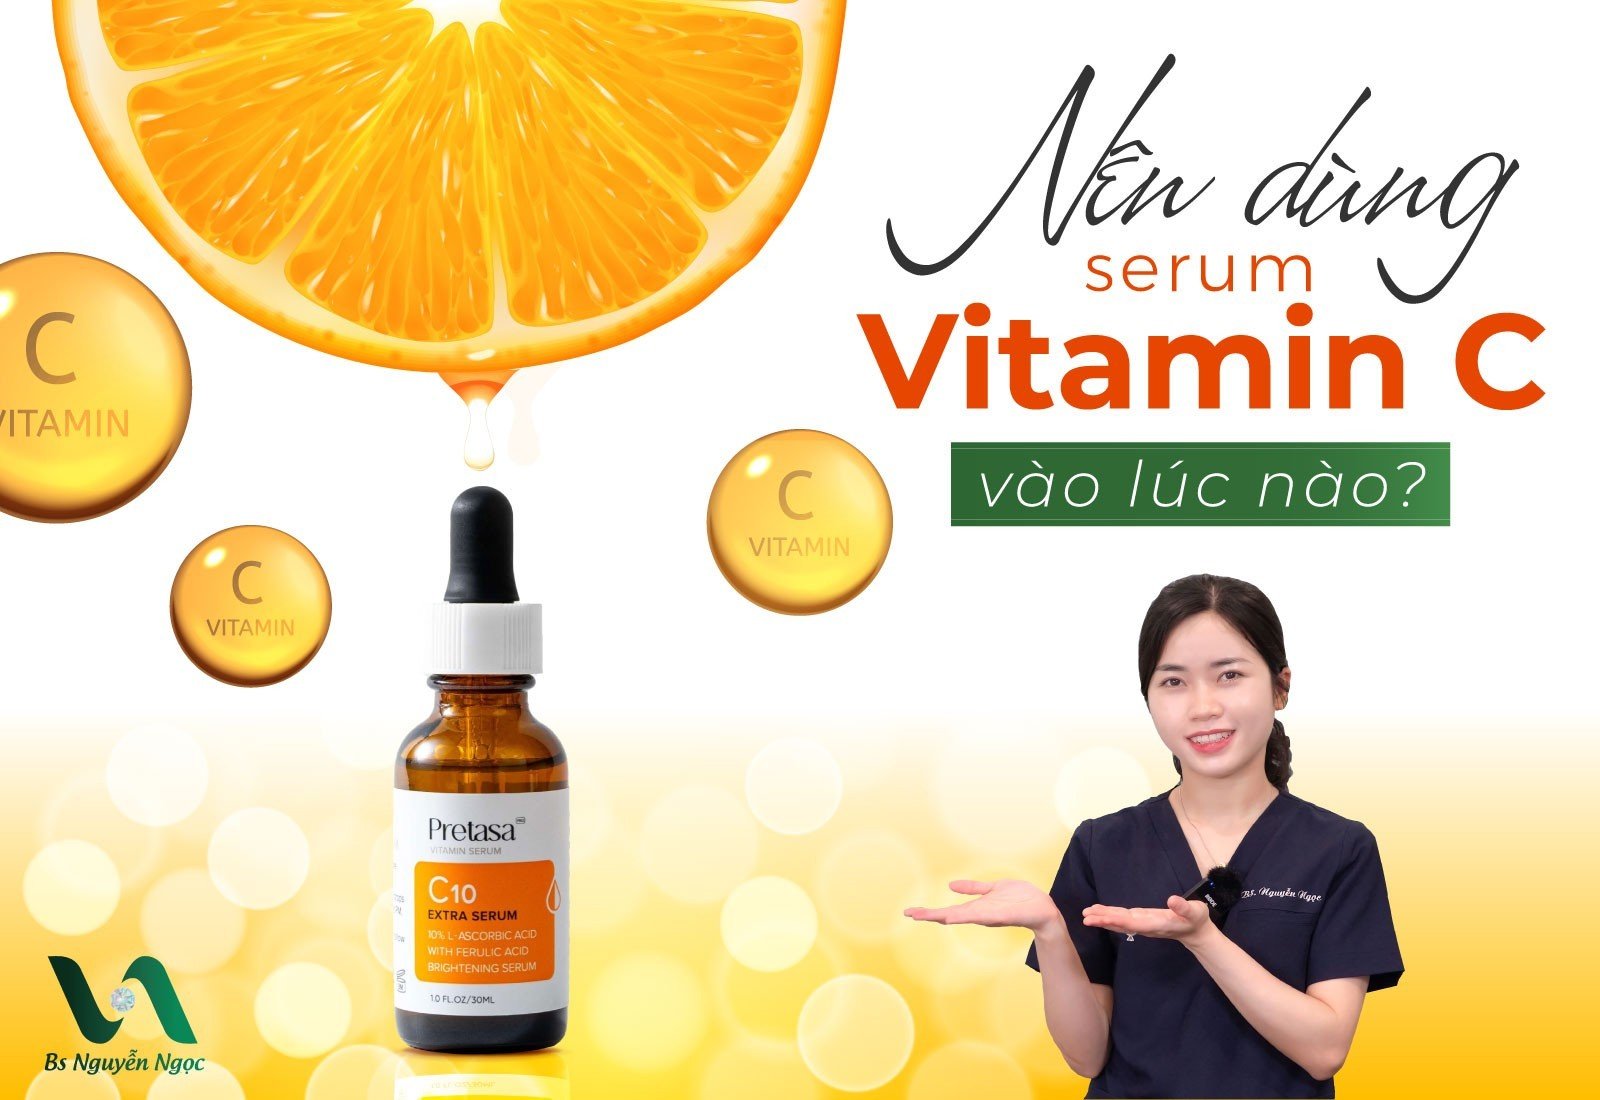 Nên dùng Serum Vitamin C vào lúc nào?